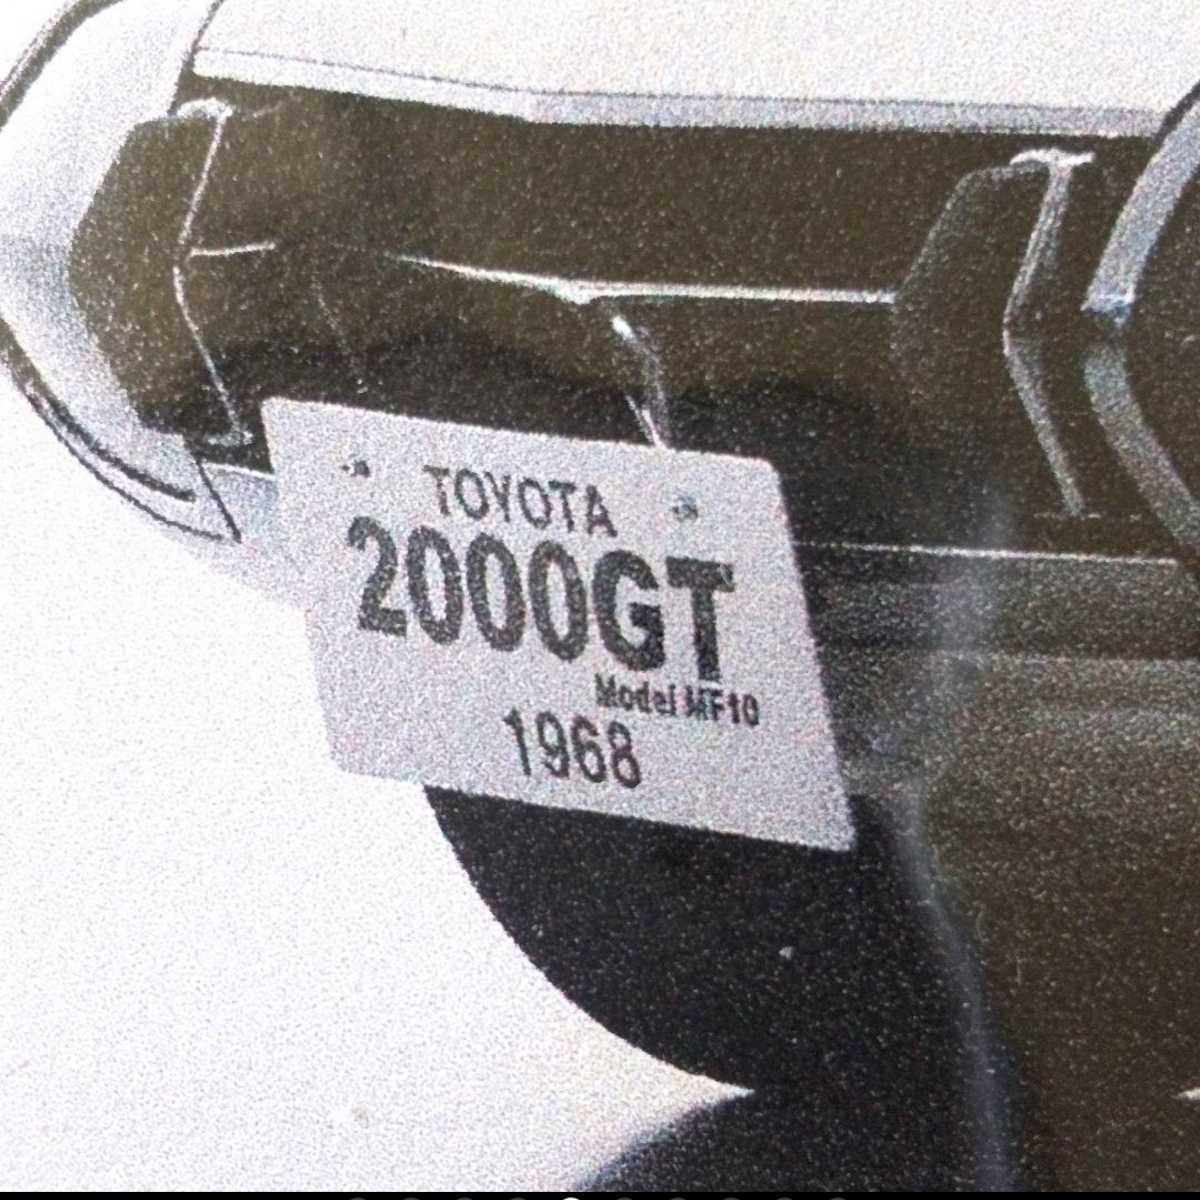 【送料無料】トヨタ博物館限定品 トヨタ2000GTマウスパッド_画像5